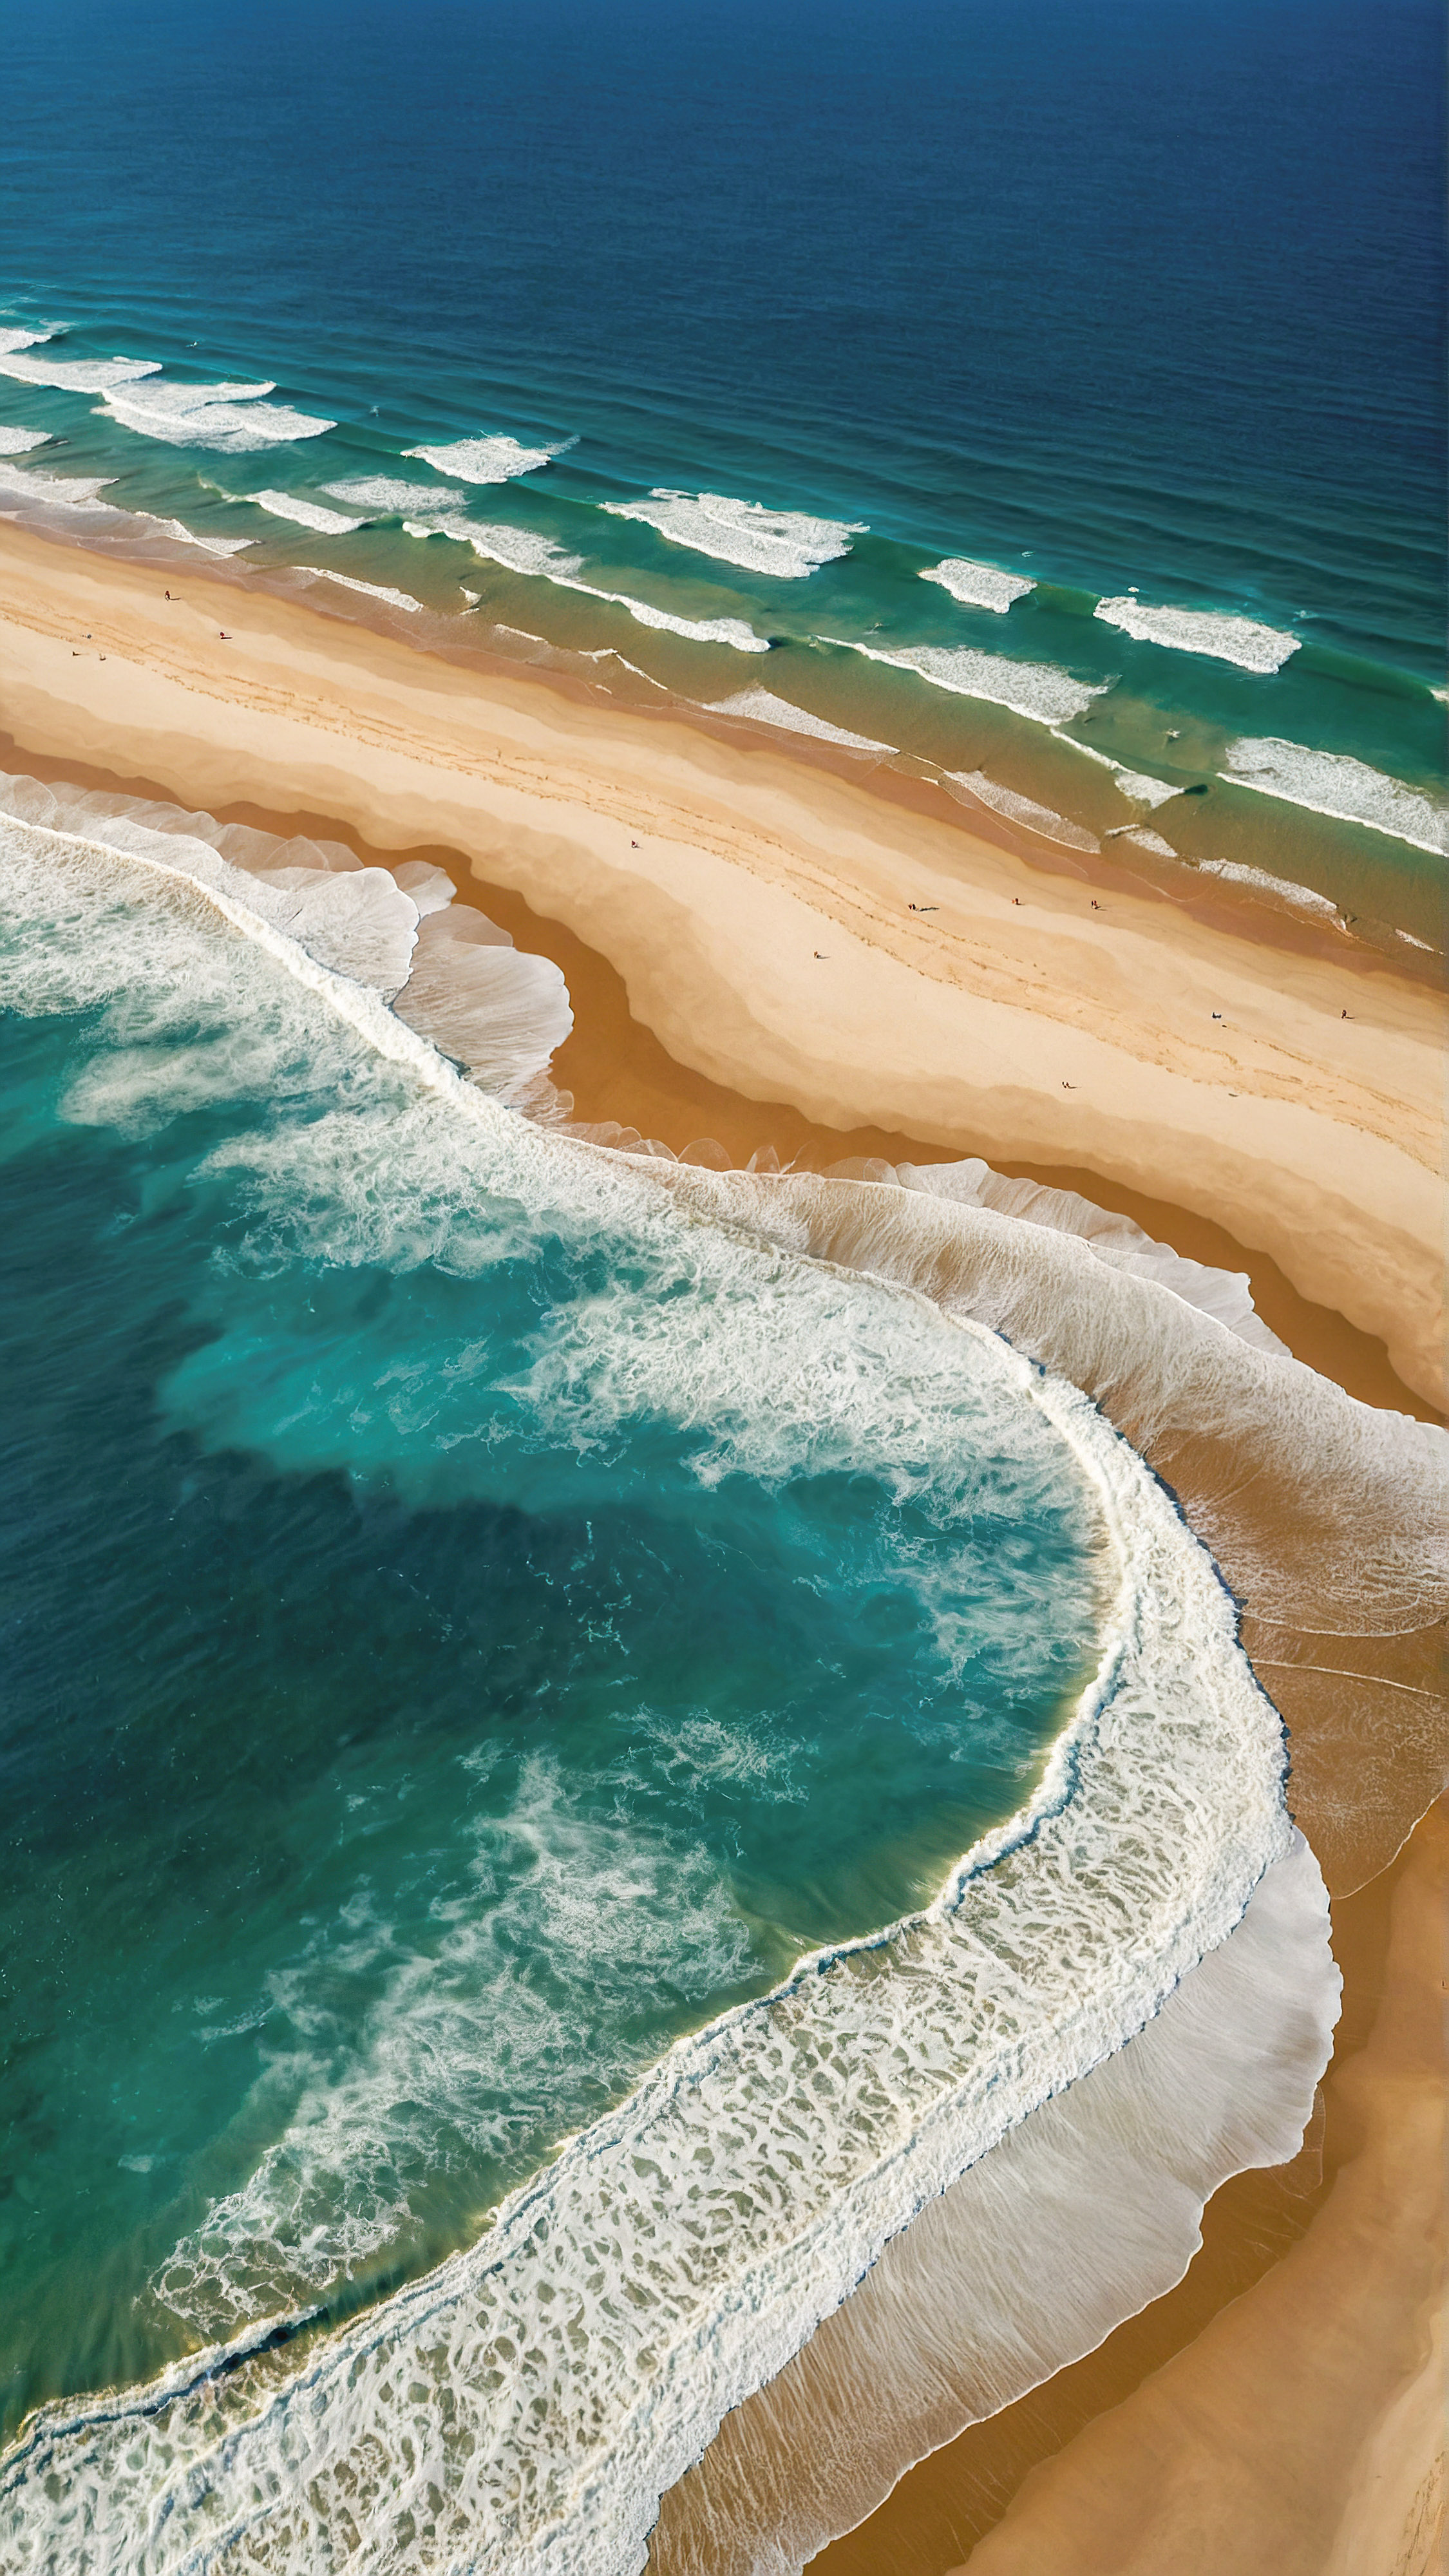 Faites l'expérience de la vue aérienne époustouflante de notre fond d'écran pour iPhone en Ultra HD 4K gratuit, présentant une plage avec un océan bleu profond, ses nuances plus claires indiquant le mouvement des vagues blanches et mousseuses rencontrant le rivage sablonneux de couleur brun clair.